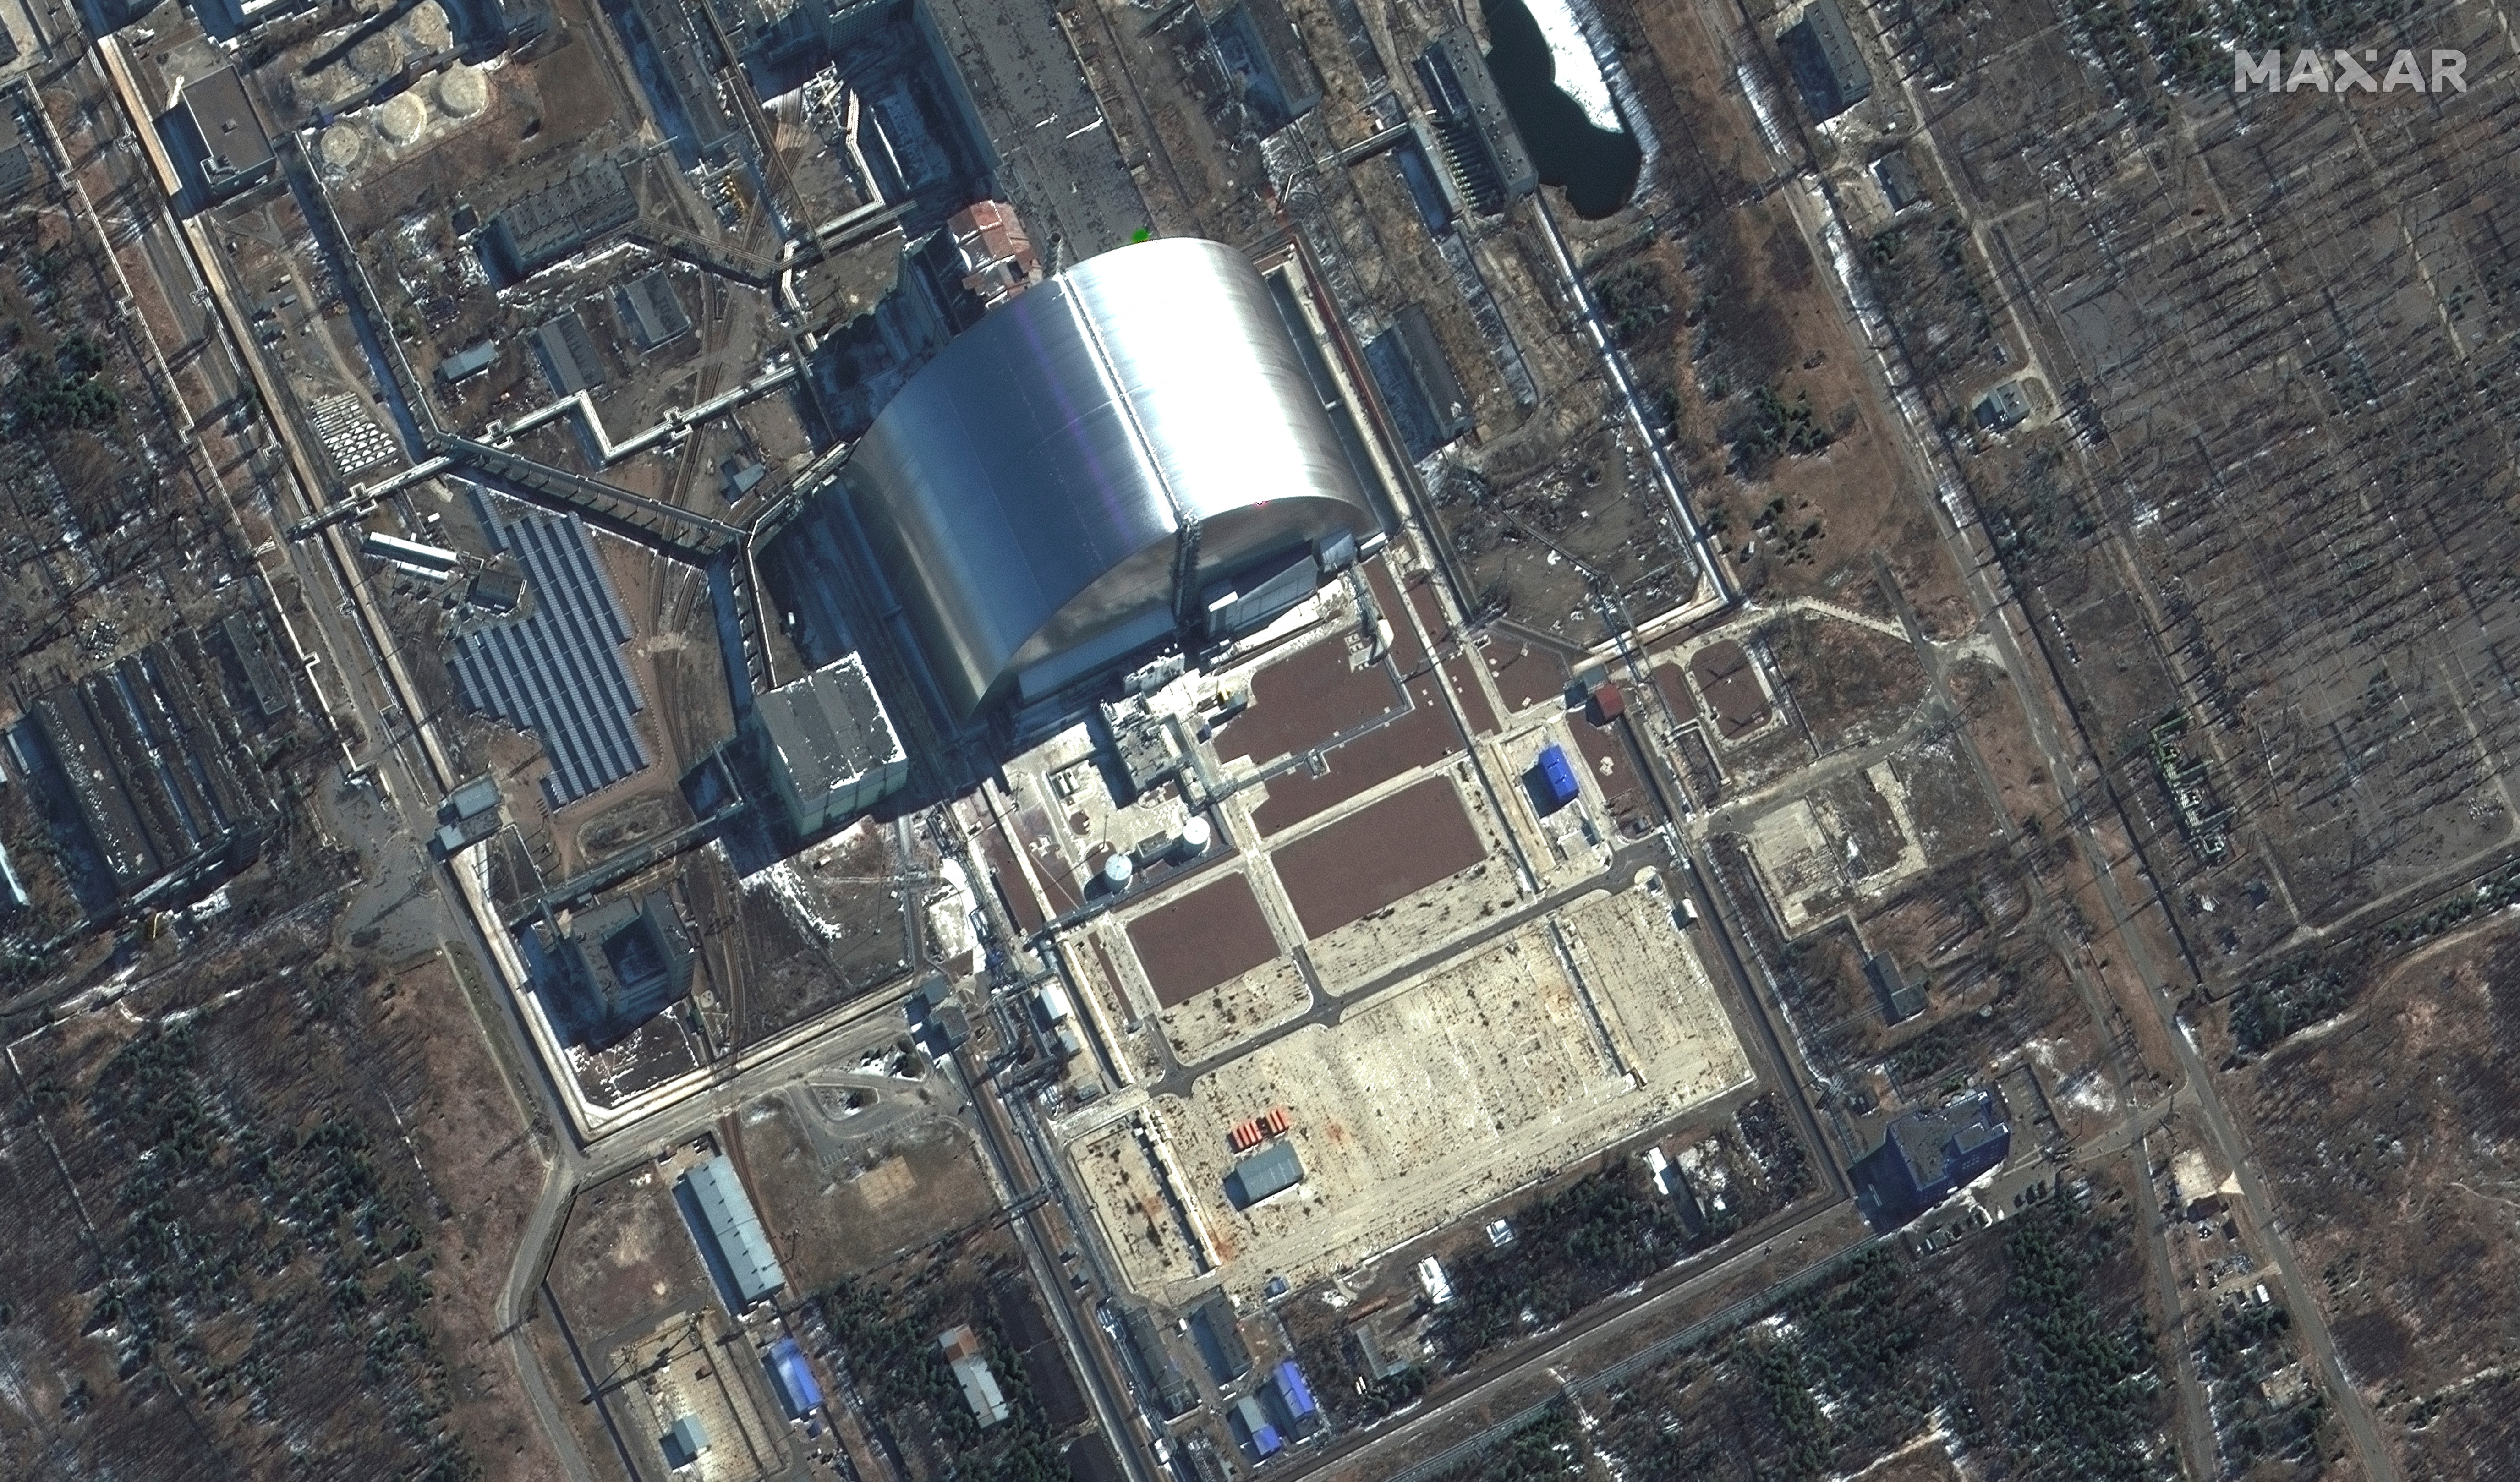 Imagen satelital del sarcófago que cubre el reactor de la central nuclear de Chernobyl que explotó en el accidente de 1986 (©2022 Maxar Technologies/Handout via REUTERS)